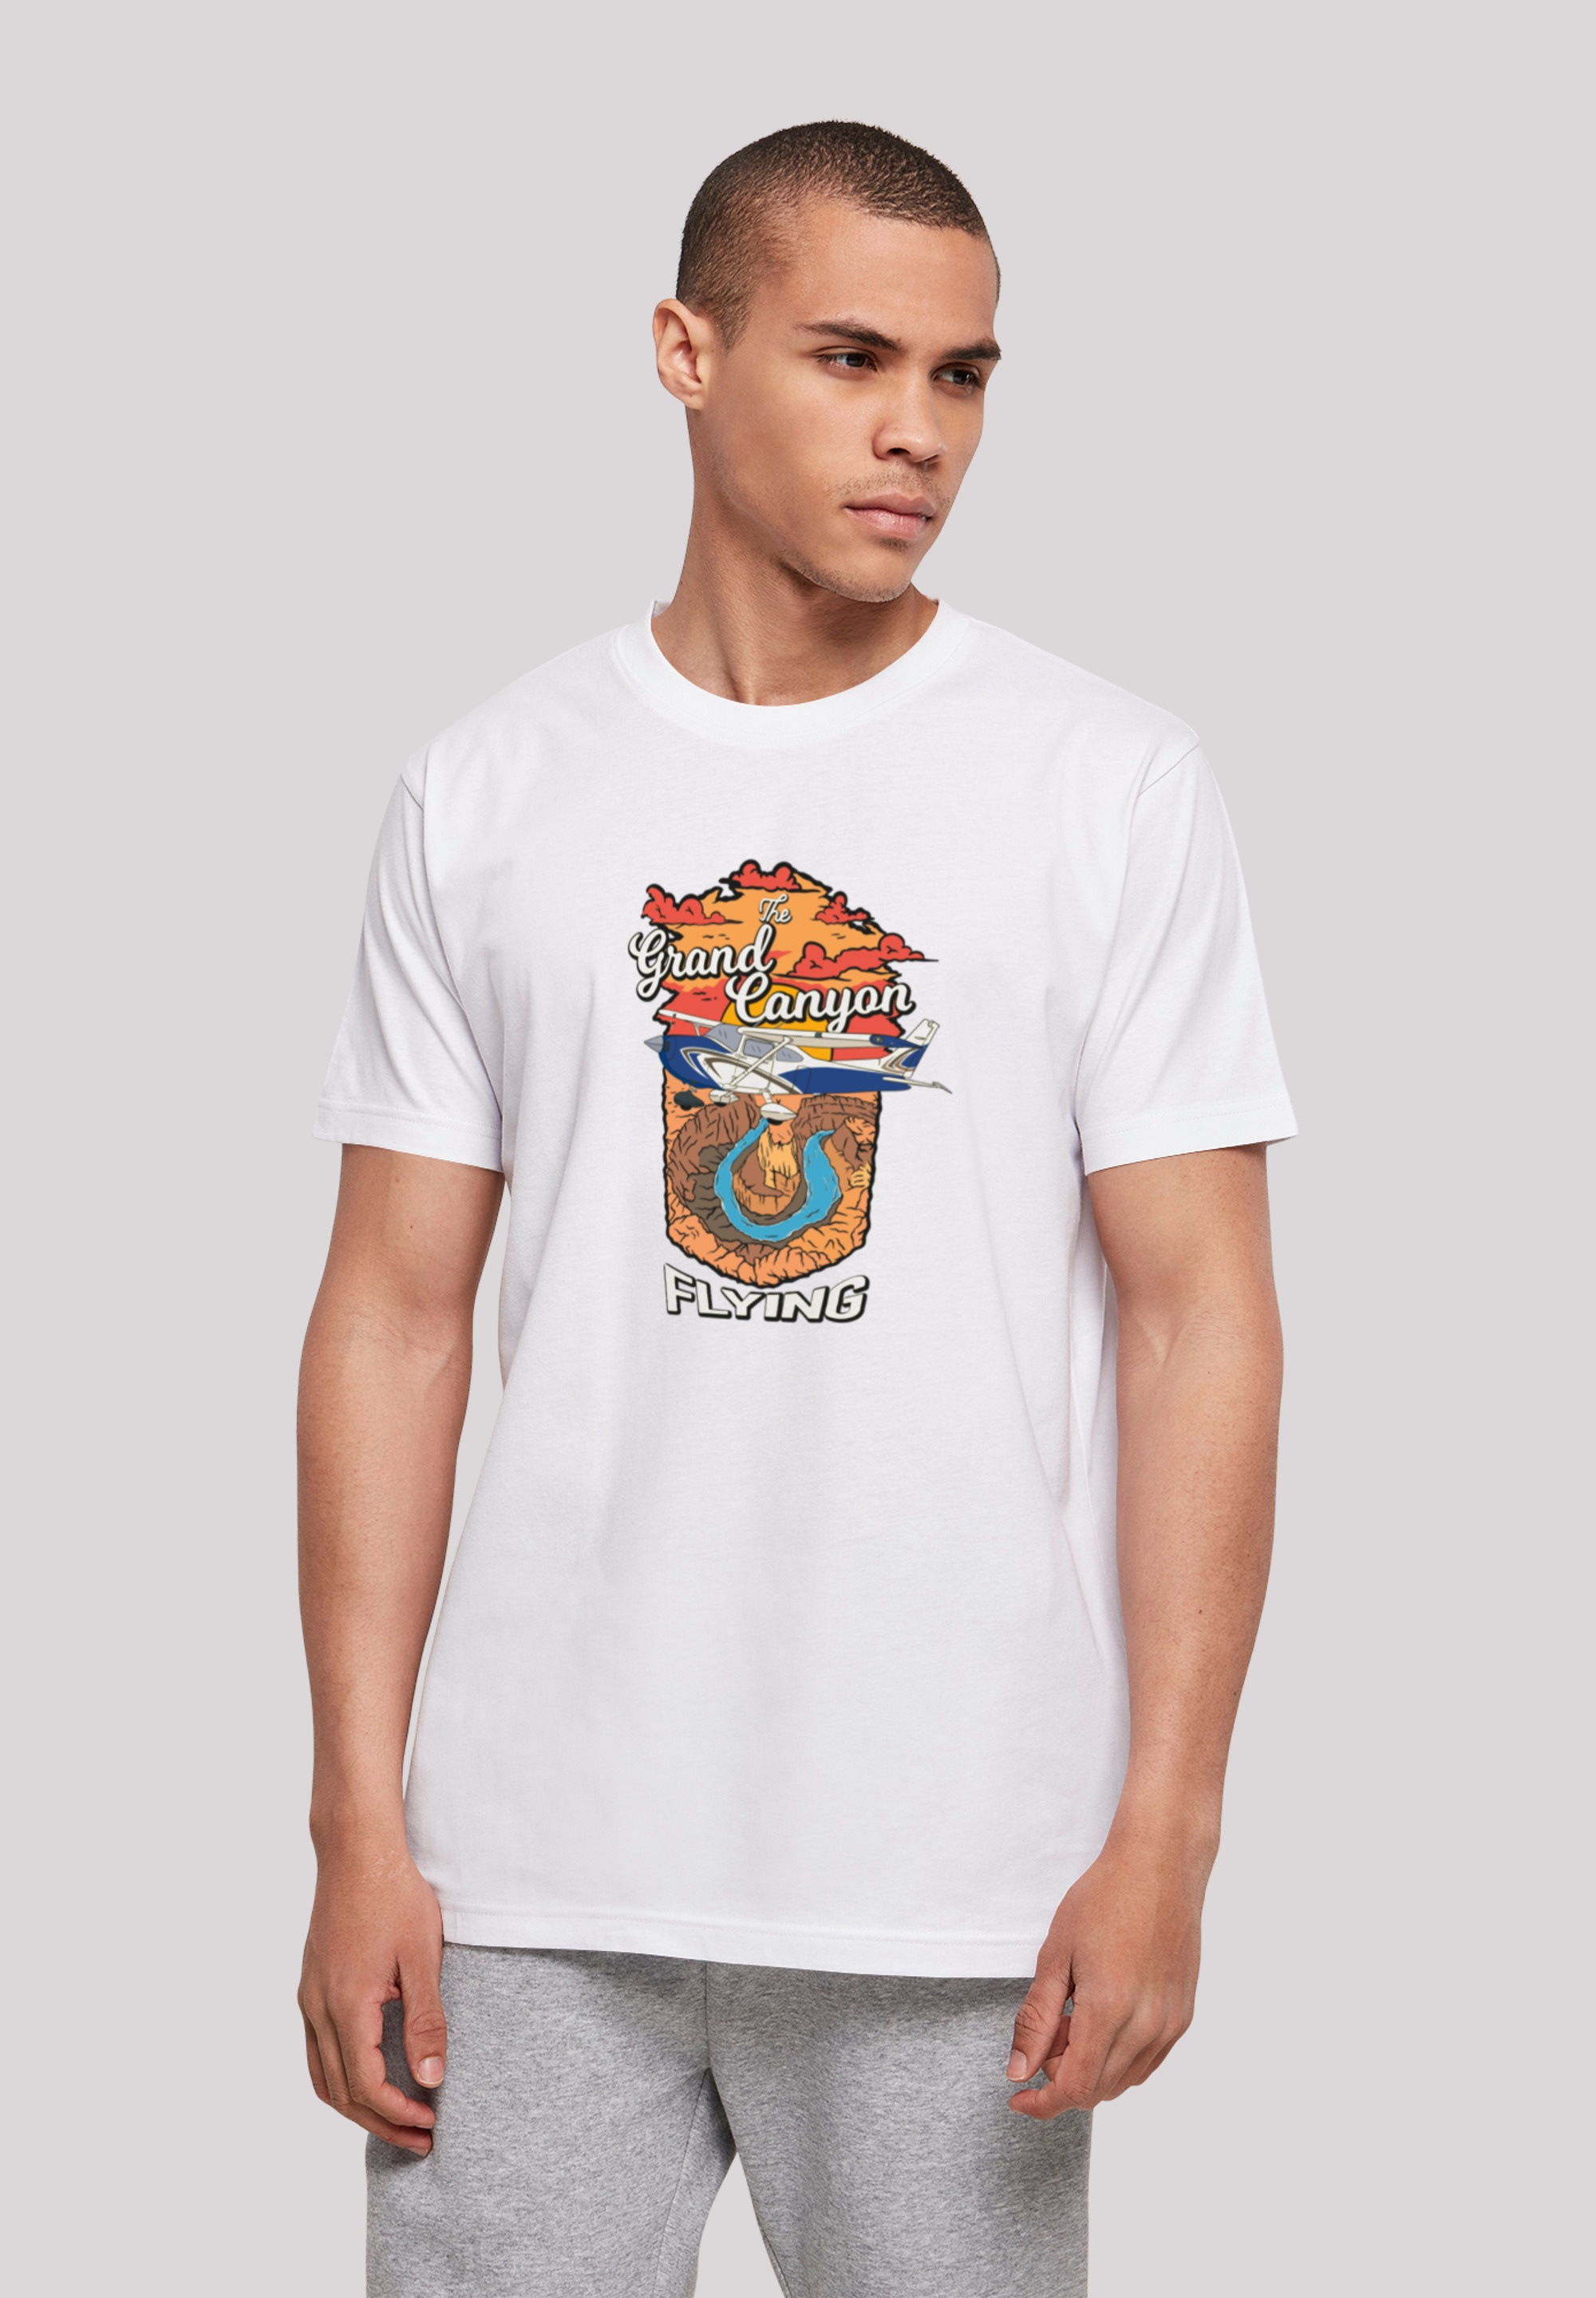 F4NT4STIC T-Shirt »Grand Canyon Flying«, Print